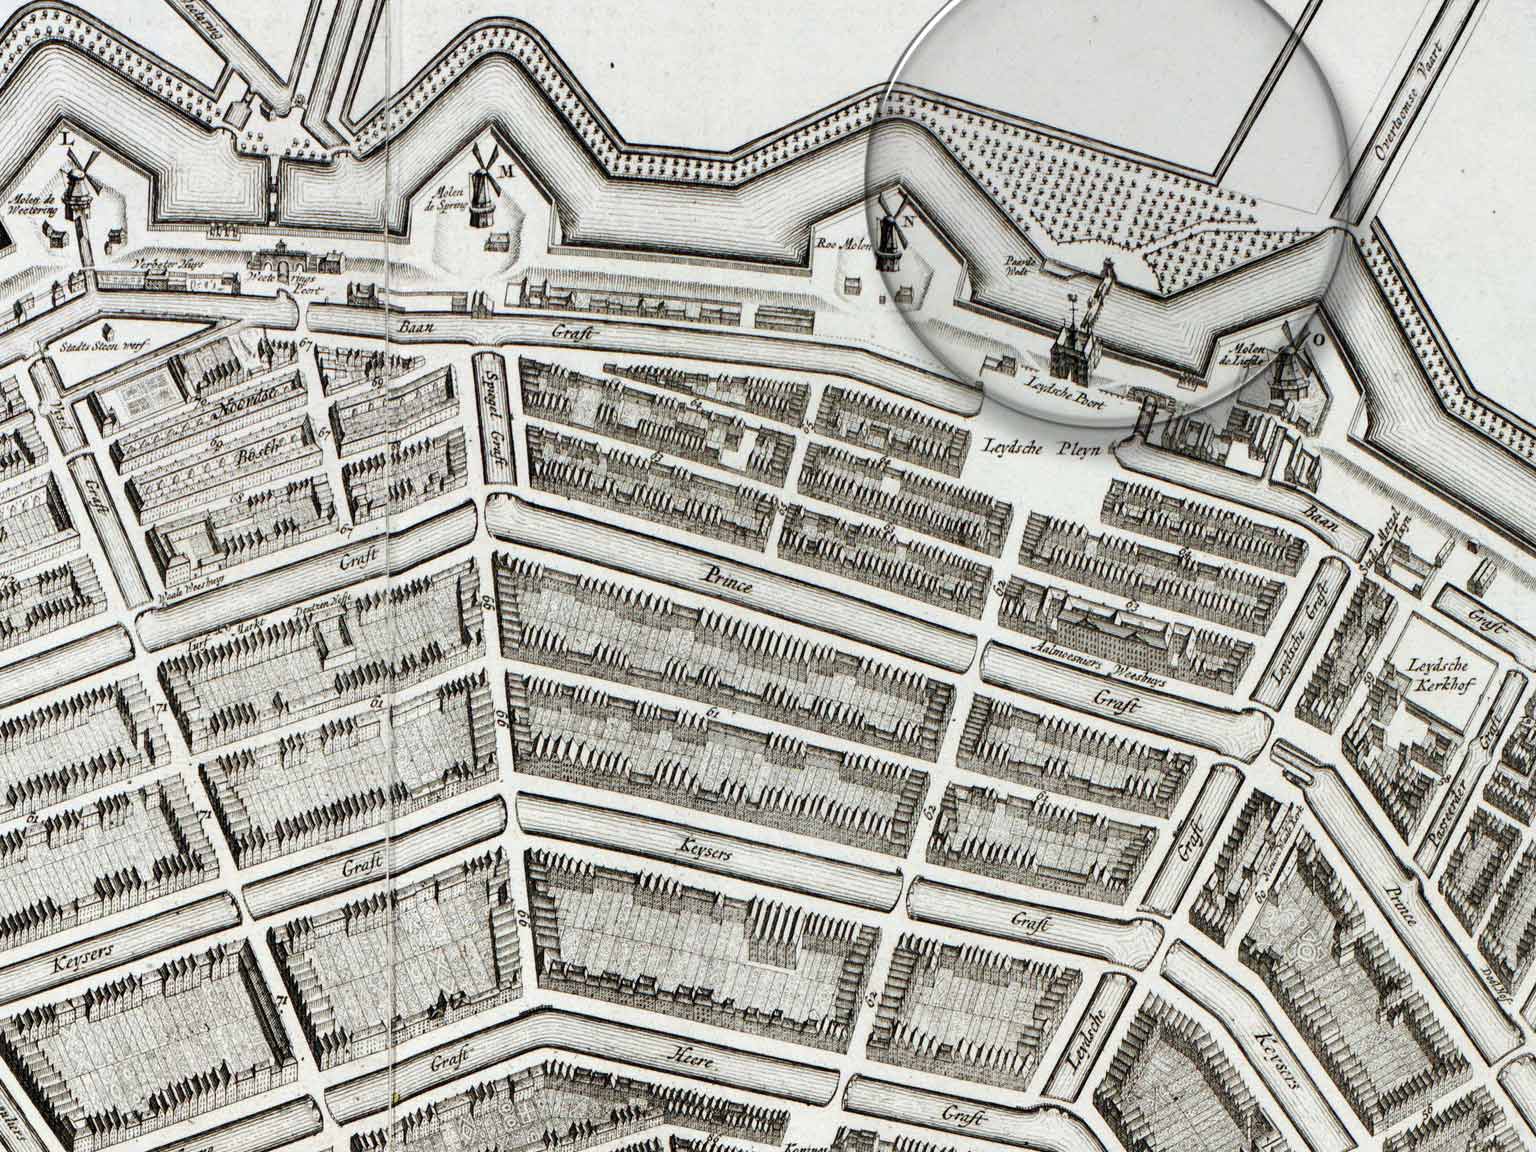 Leidsebosje, Amsterdam, detail of a map from 1737 by Gerrit de Broen